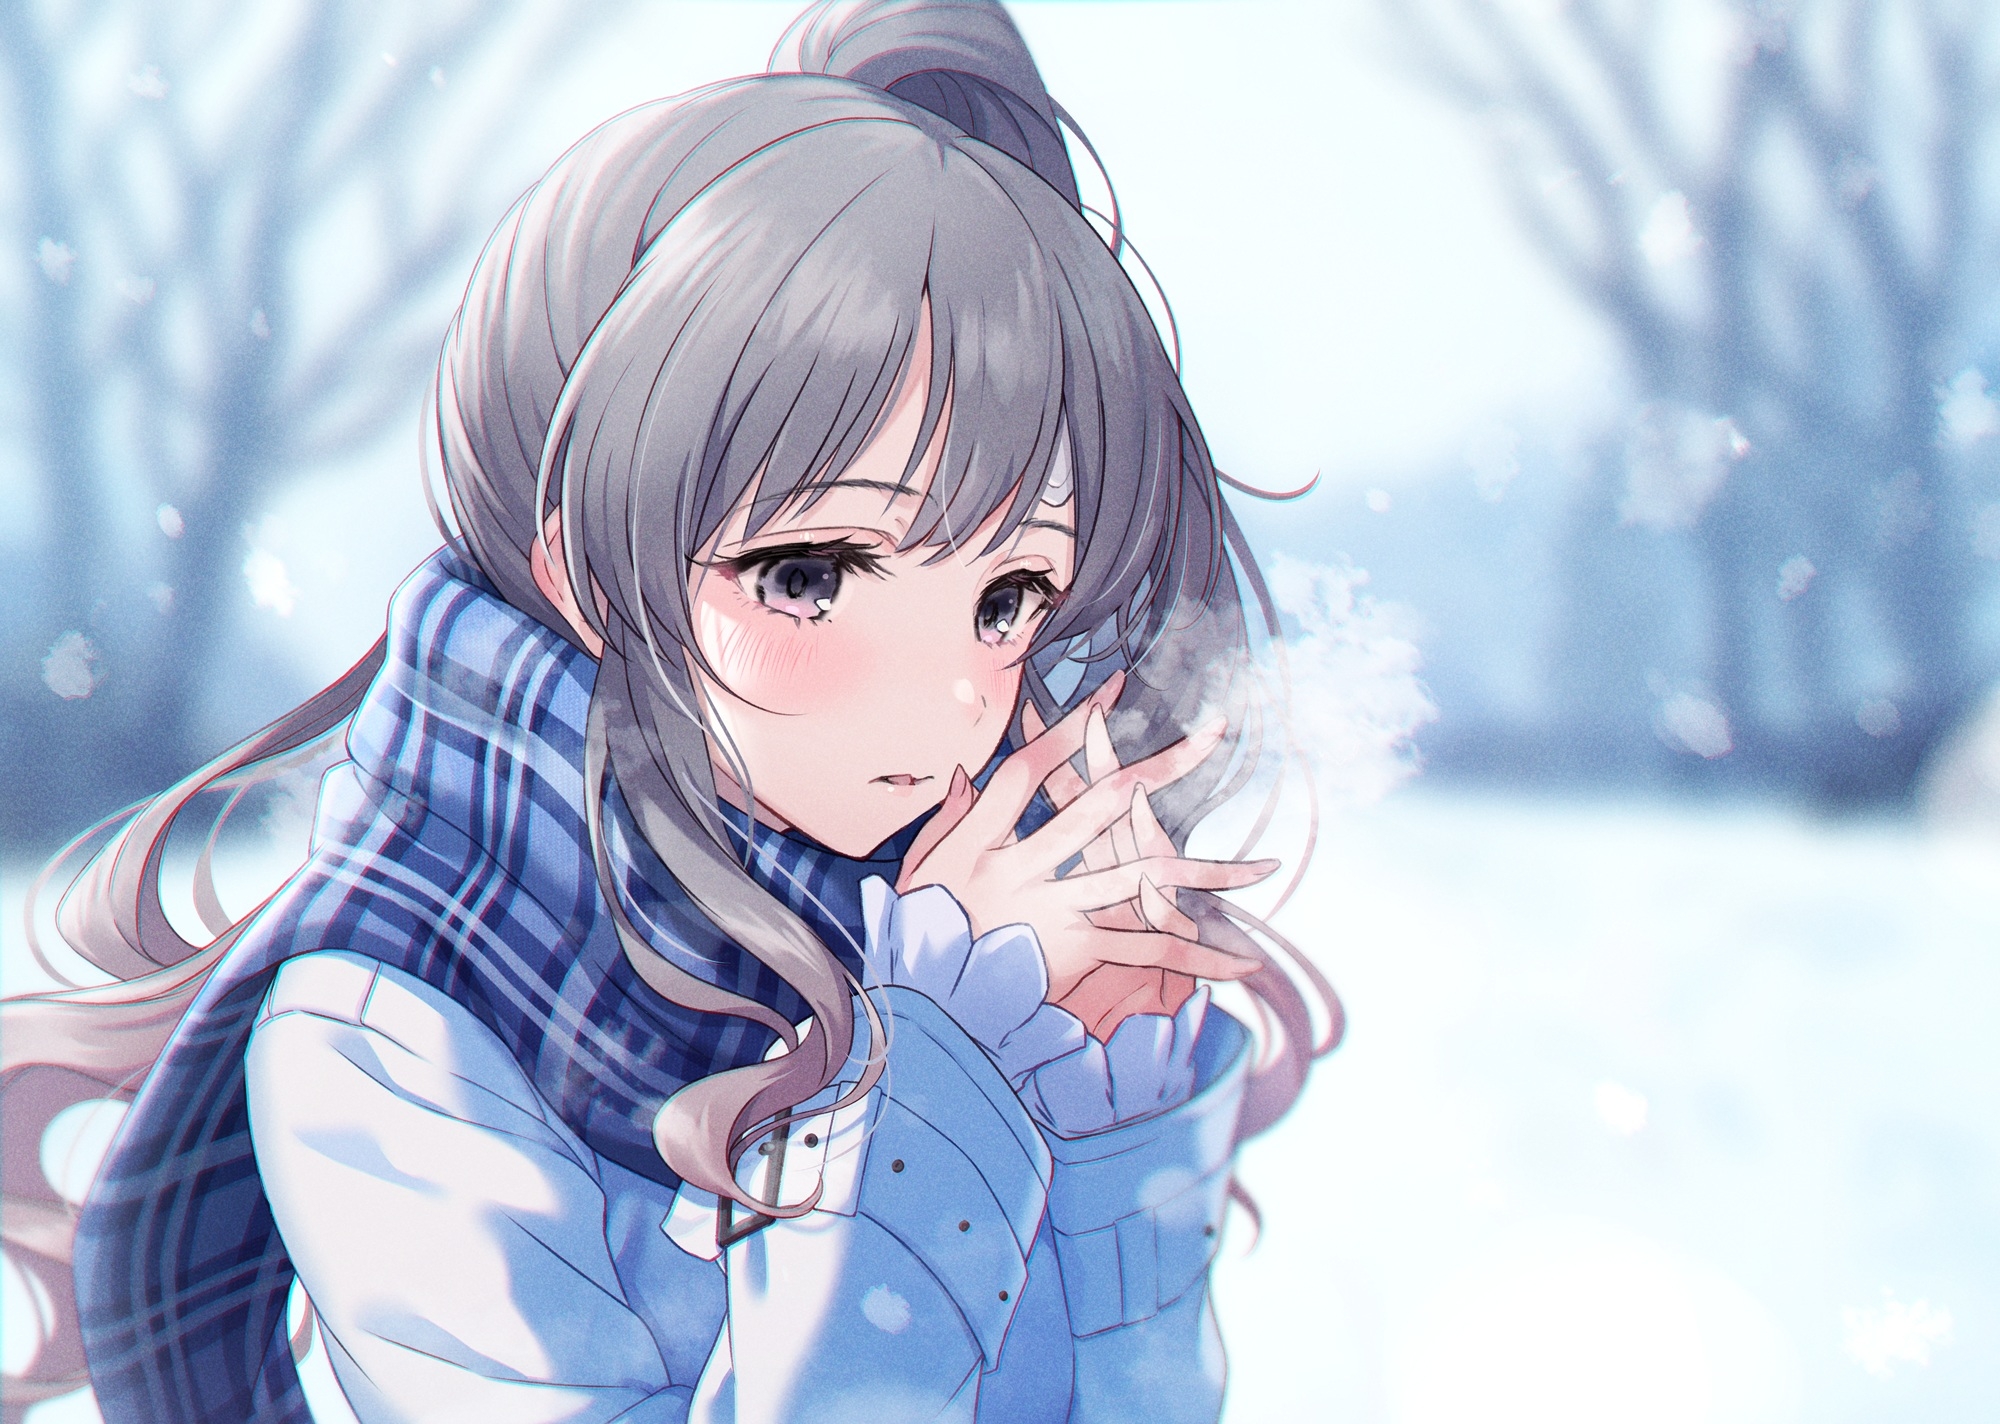 Anime girl freezing outside in winter